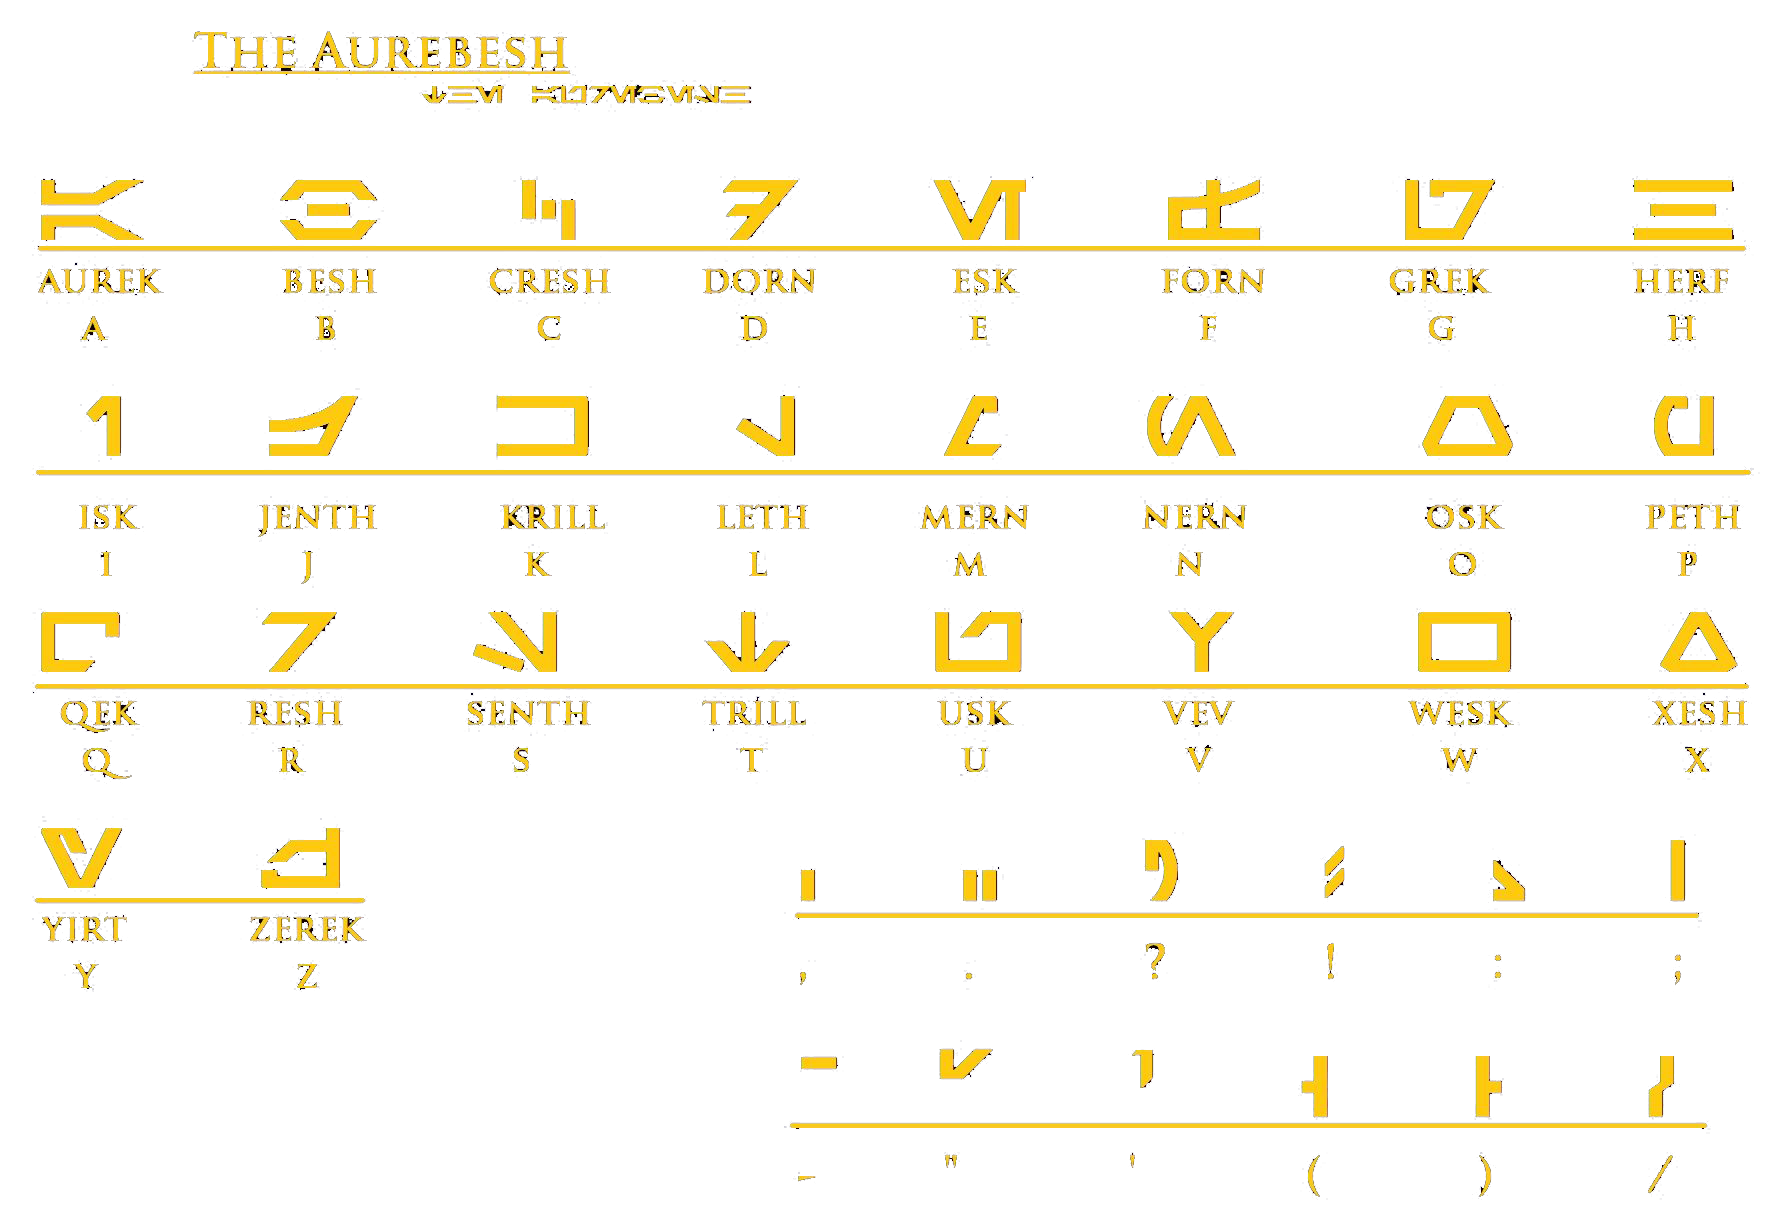 Aurebesh letters (Star Wars alphabet)